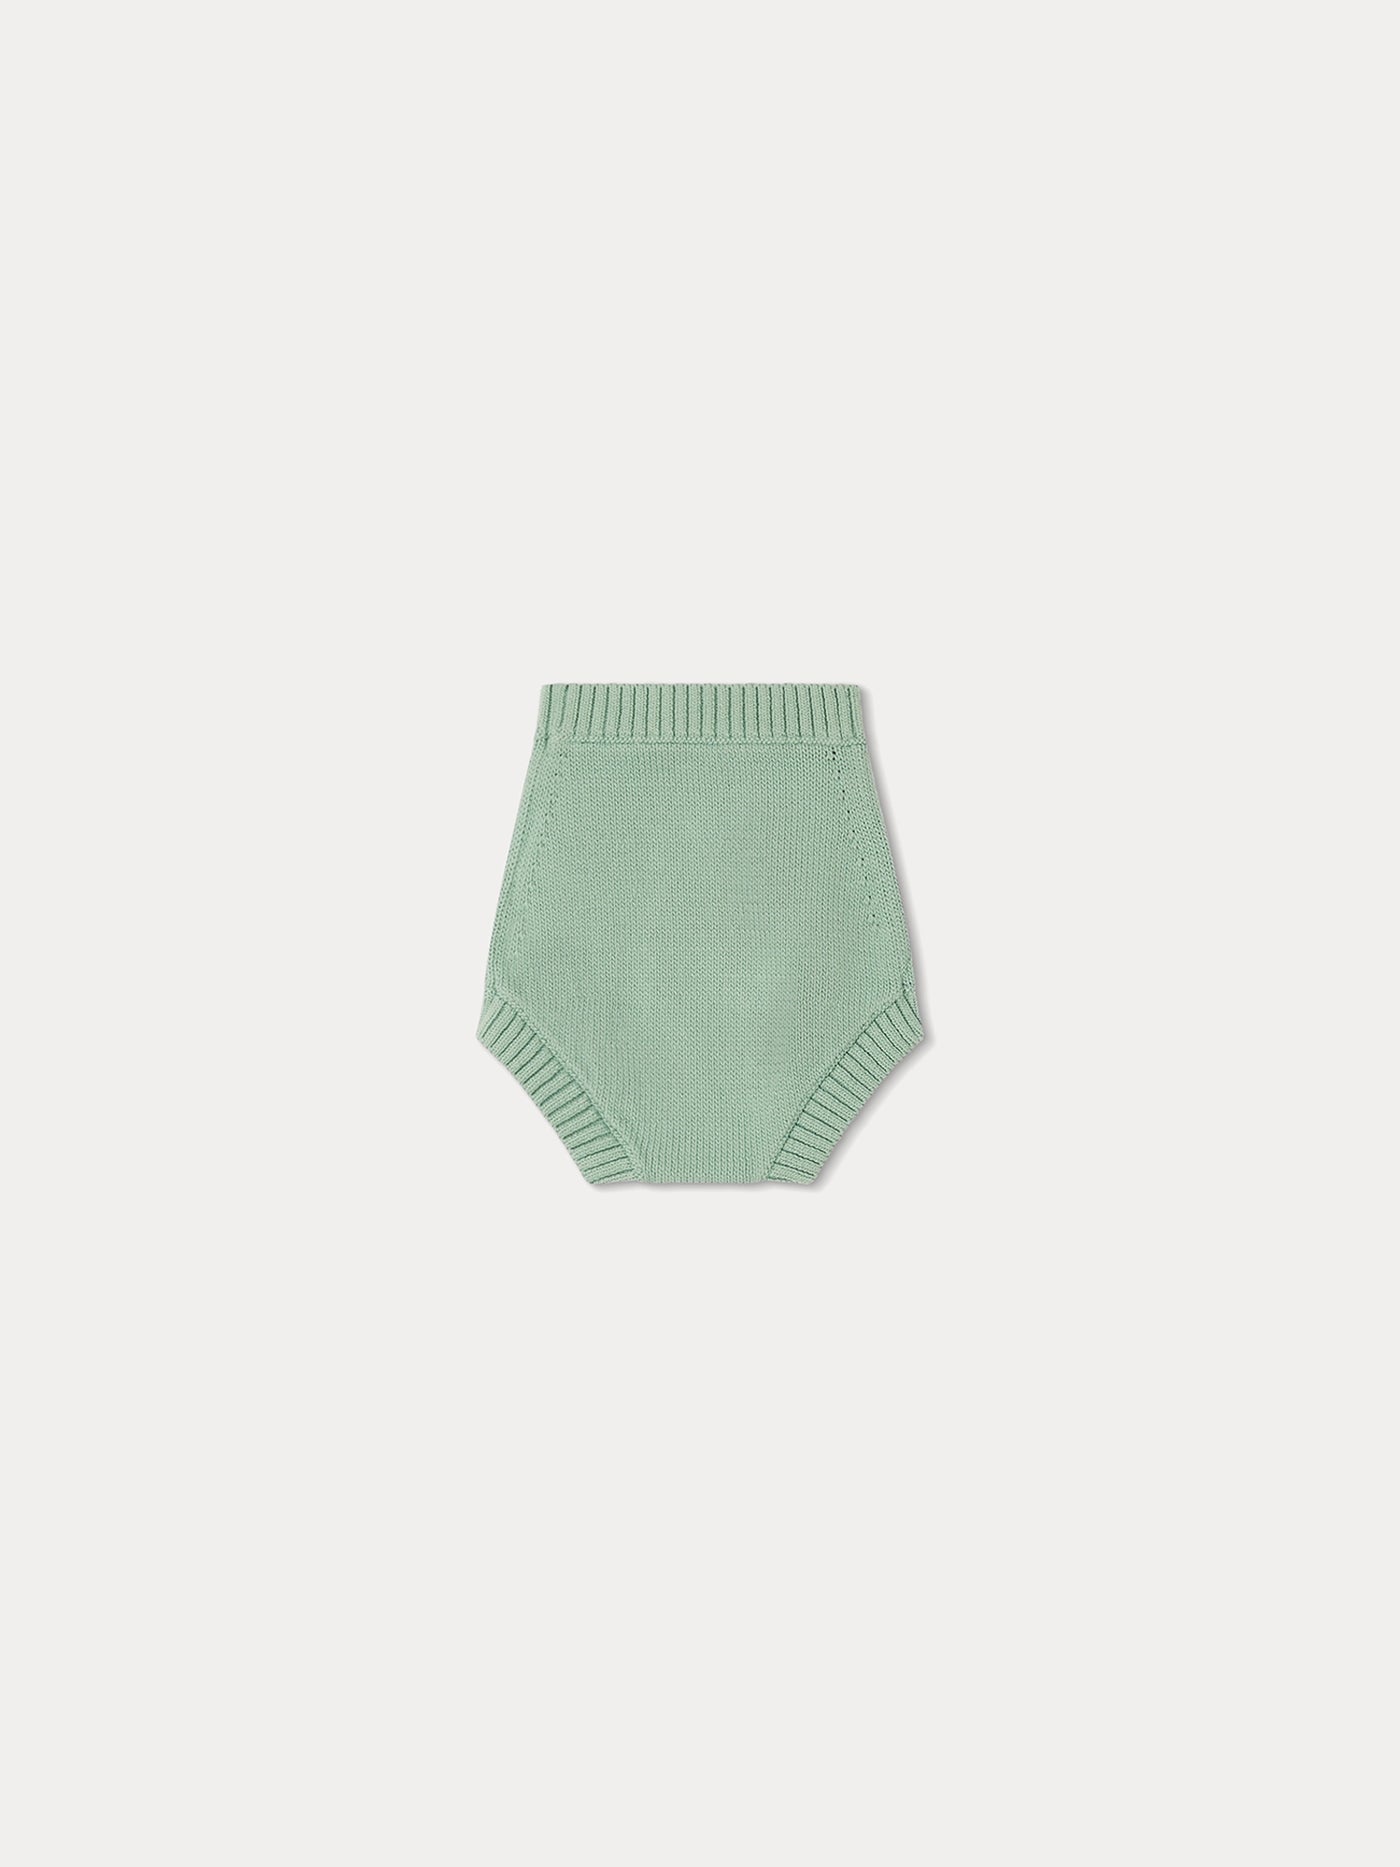 Cool Underwear celadon green